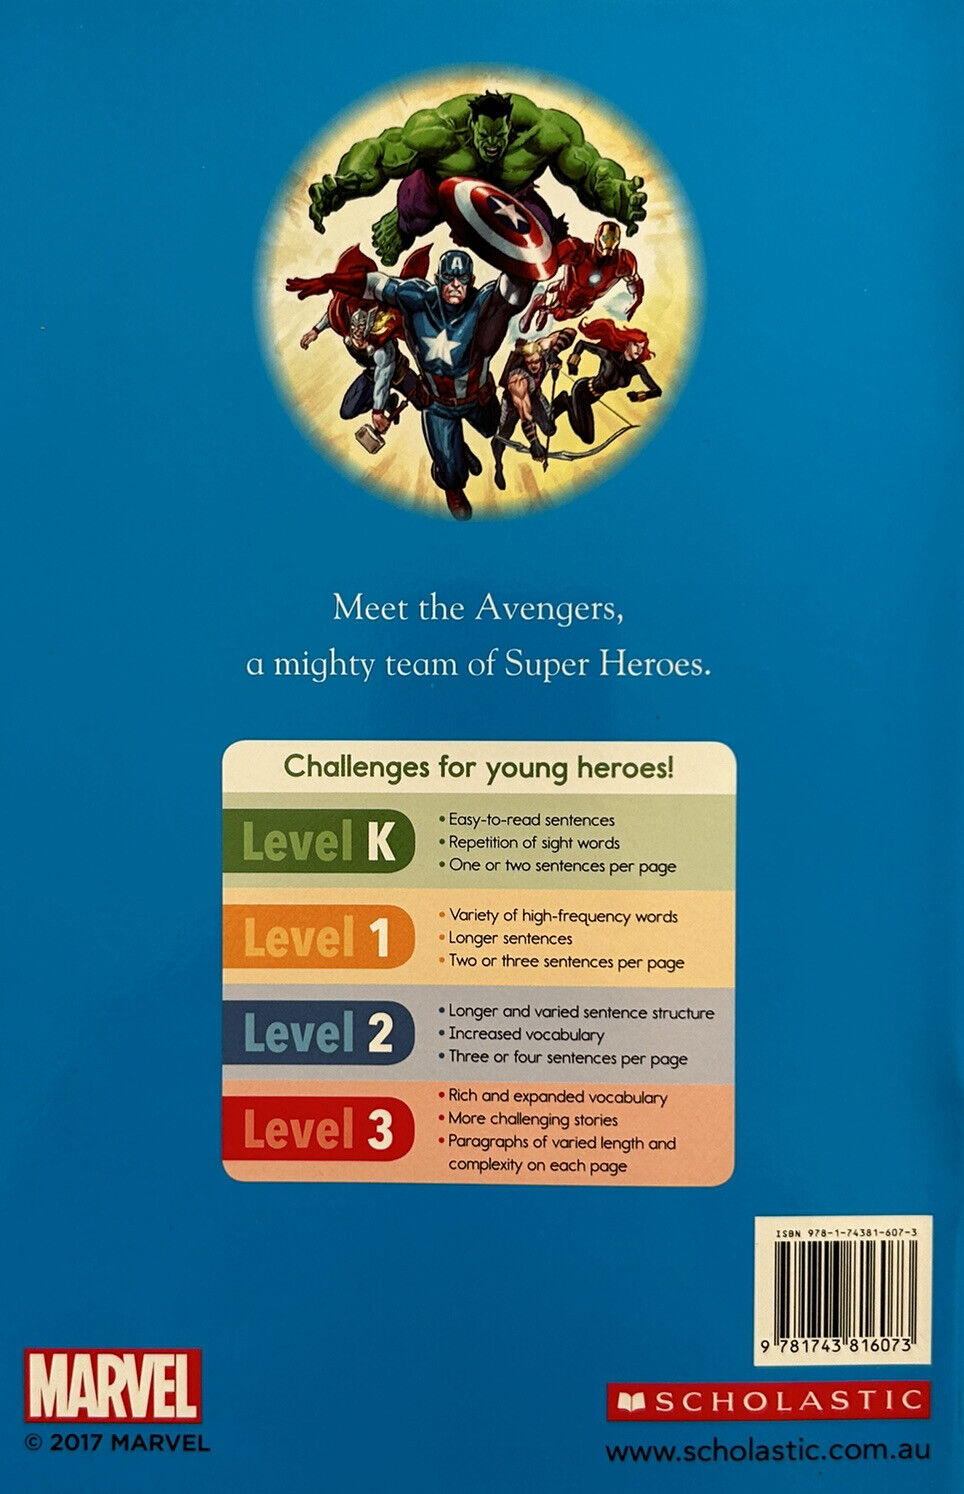 Marvel Books - AVENGERS: THESE ARE THE AVENGERS Hero Reader Level 1